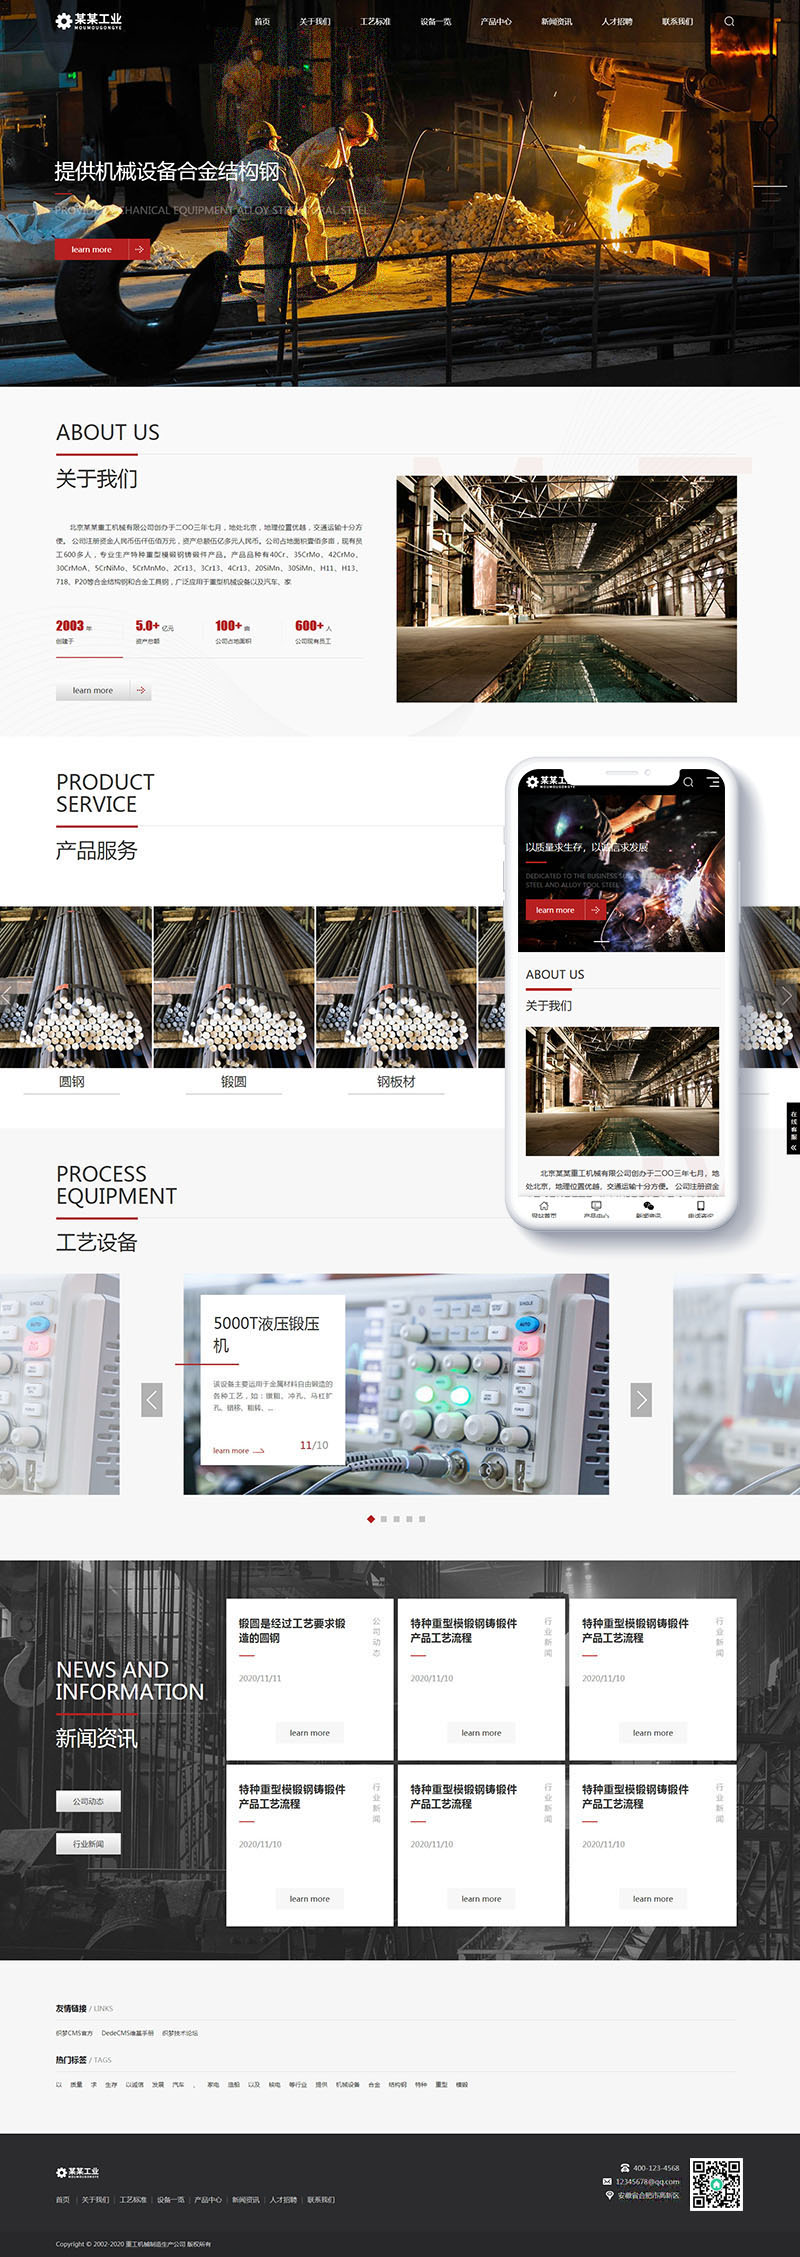 织梦响应式重工业钢铁机械类网站织梦模板(自适应手机端)插图